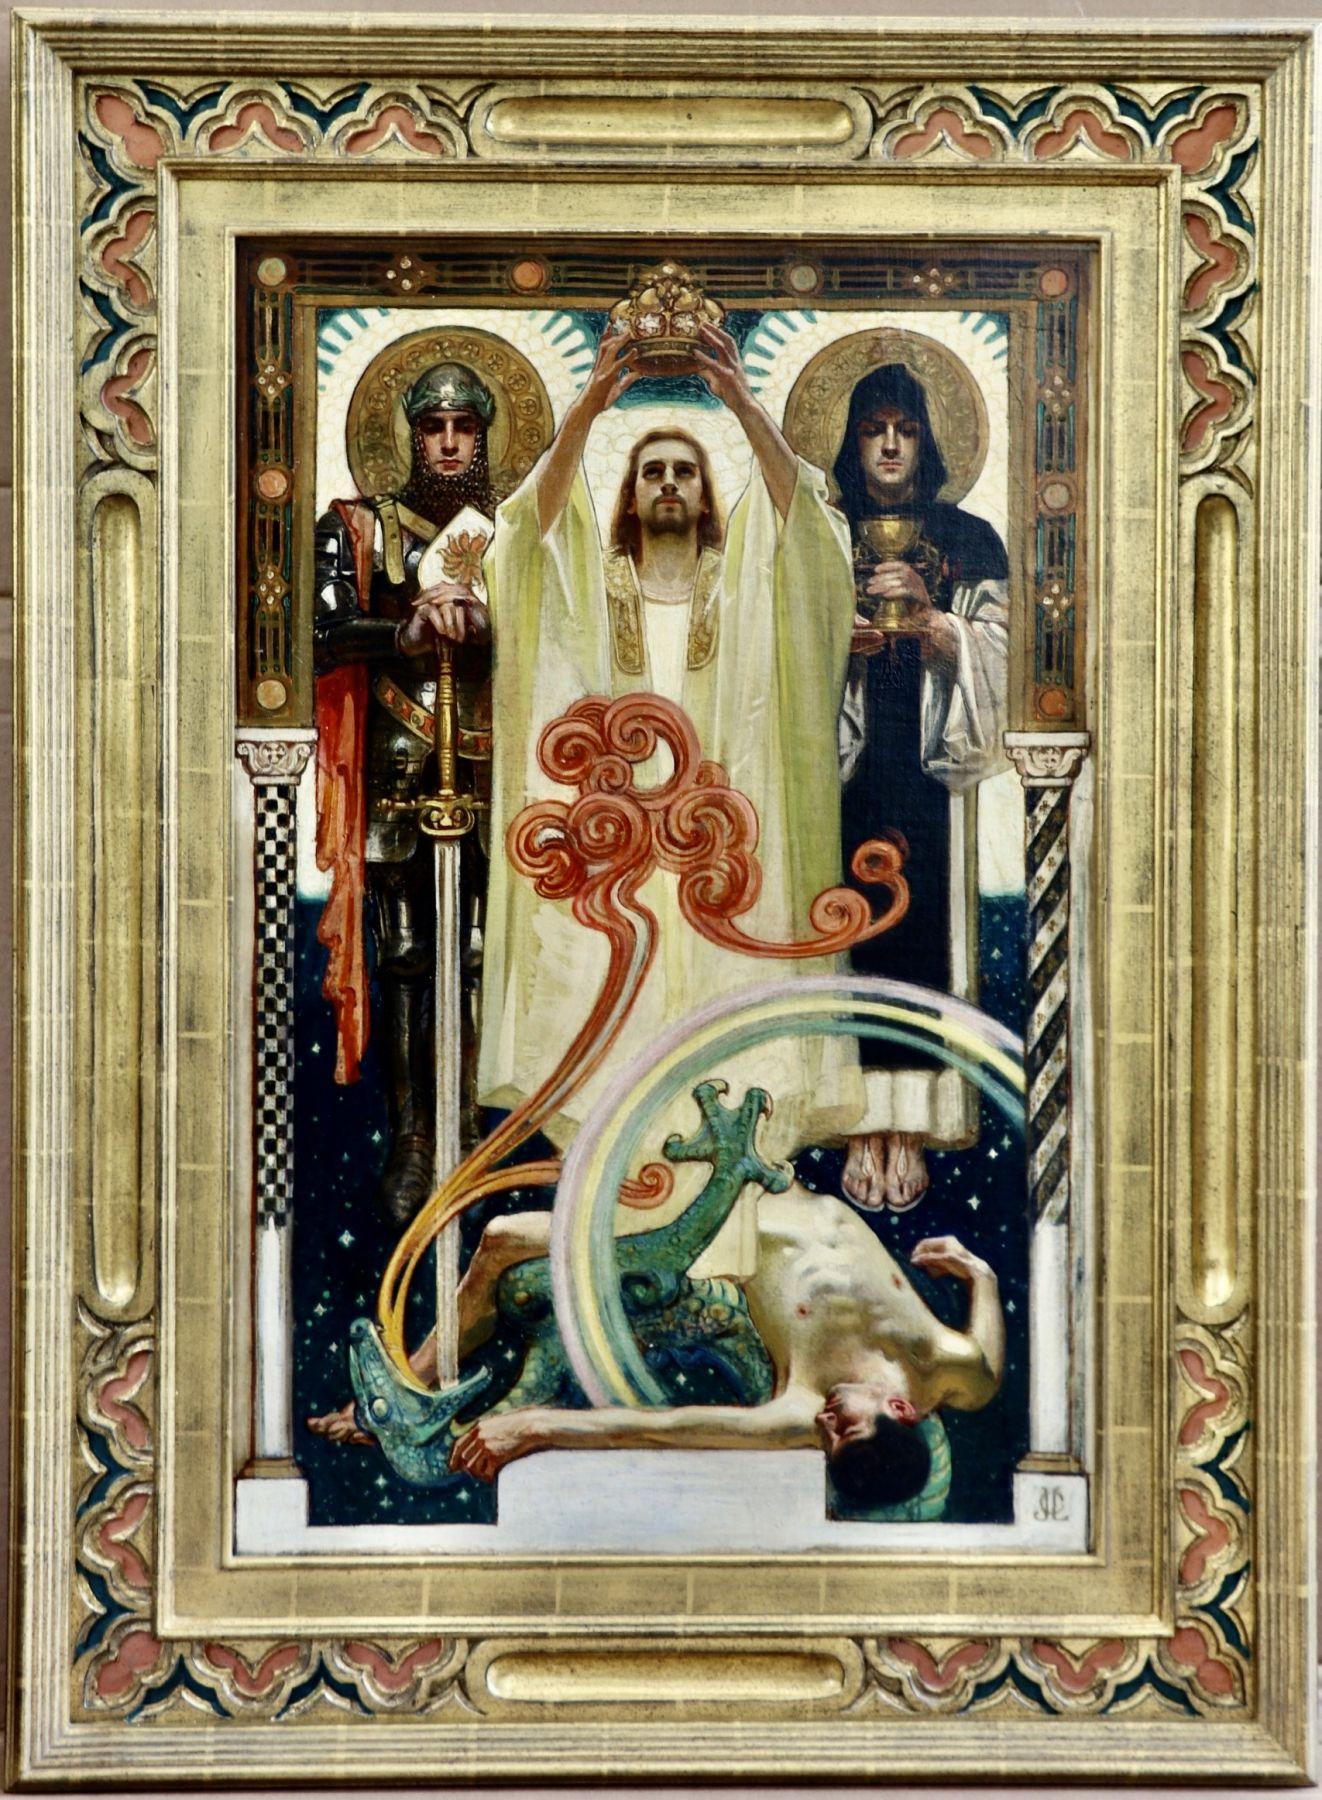 Christ avec chevaliers saints - Painting de Joseph Christian Leyendecker